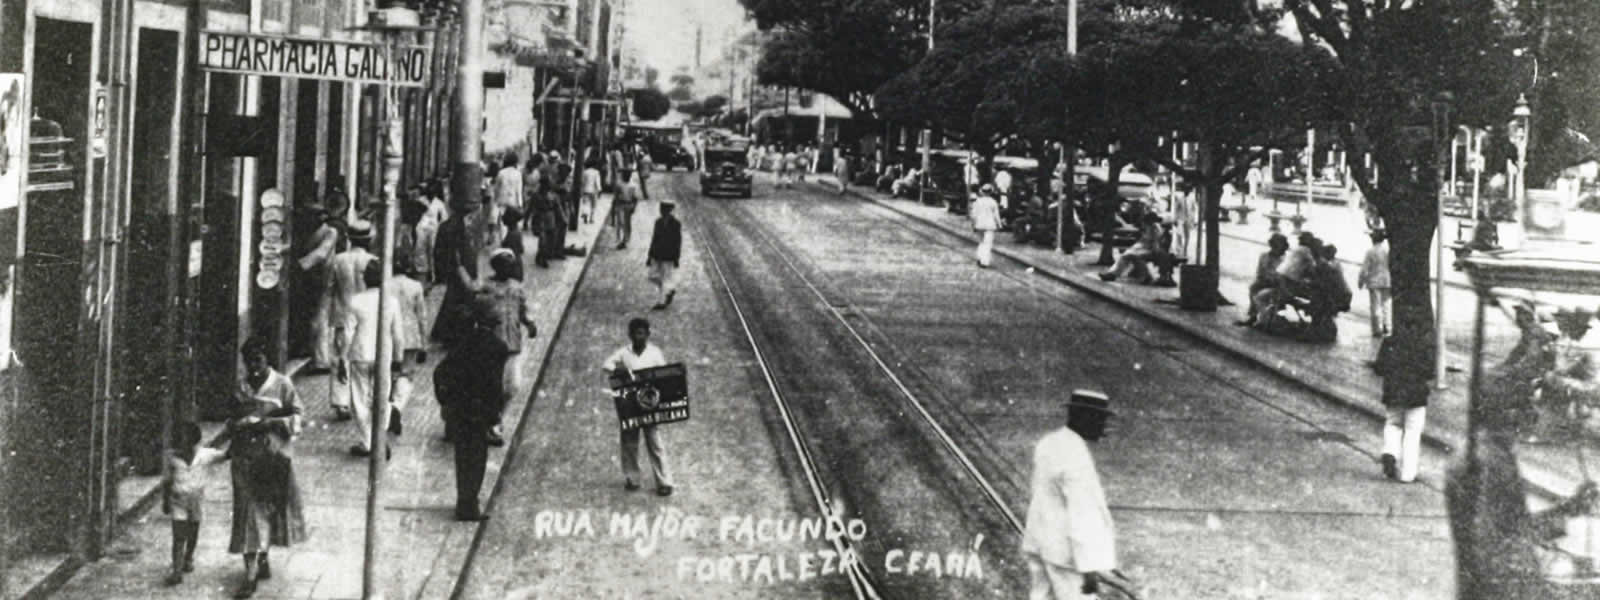 Fotos antigas do acervo do Banco de Dados do O POVO contam um pouco da história de Fortaleza